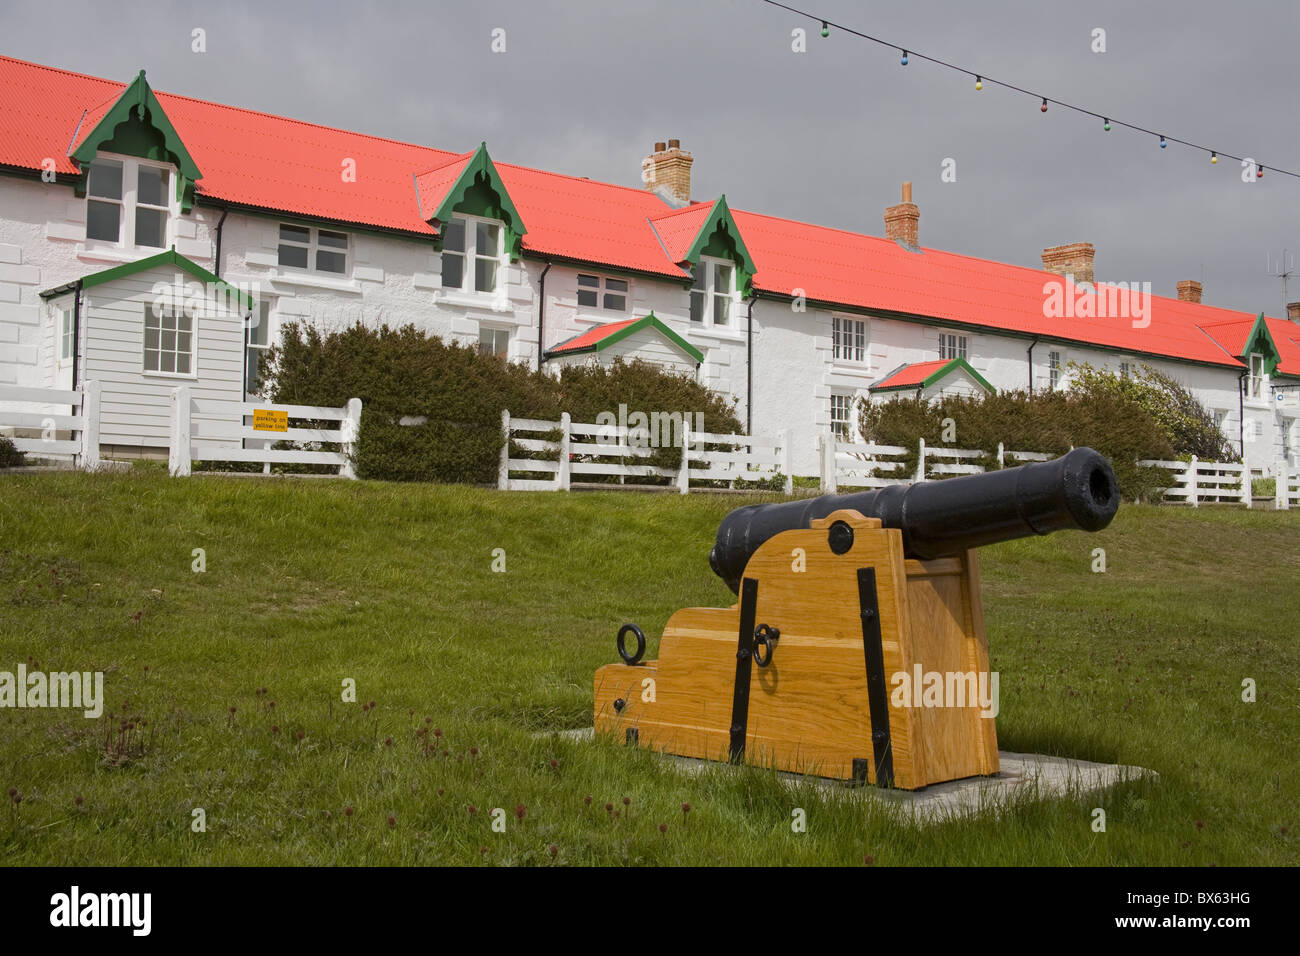 Cannon sur vert la victoire à Port Stanley, îles Falkland (Malouines), l'Amérique du Sud Banque D'Images